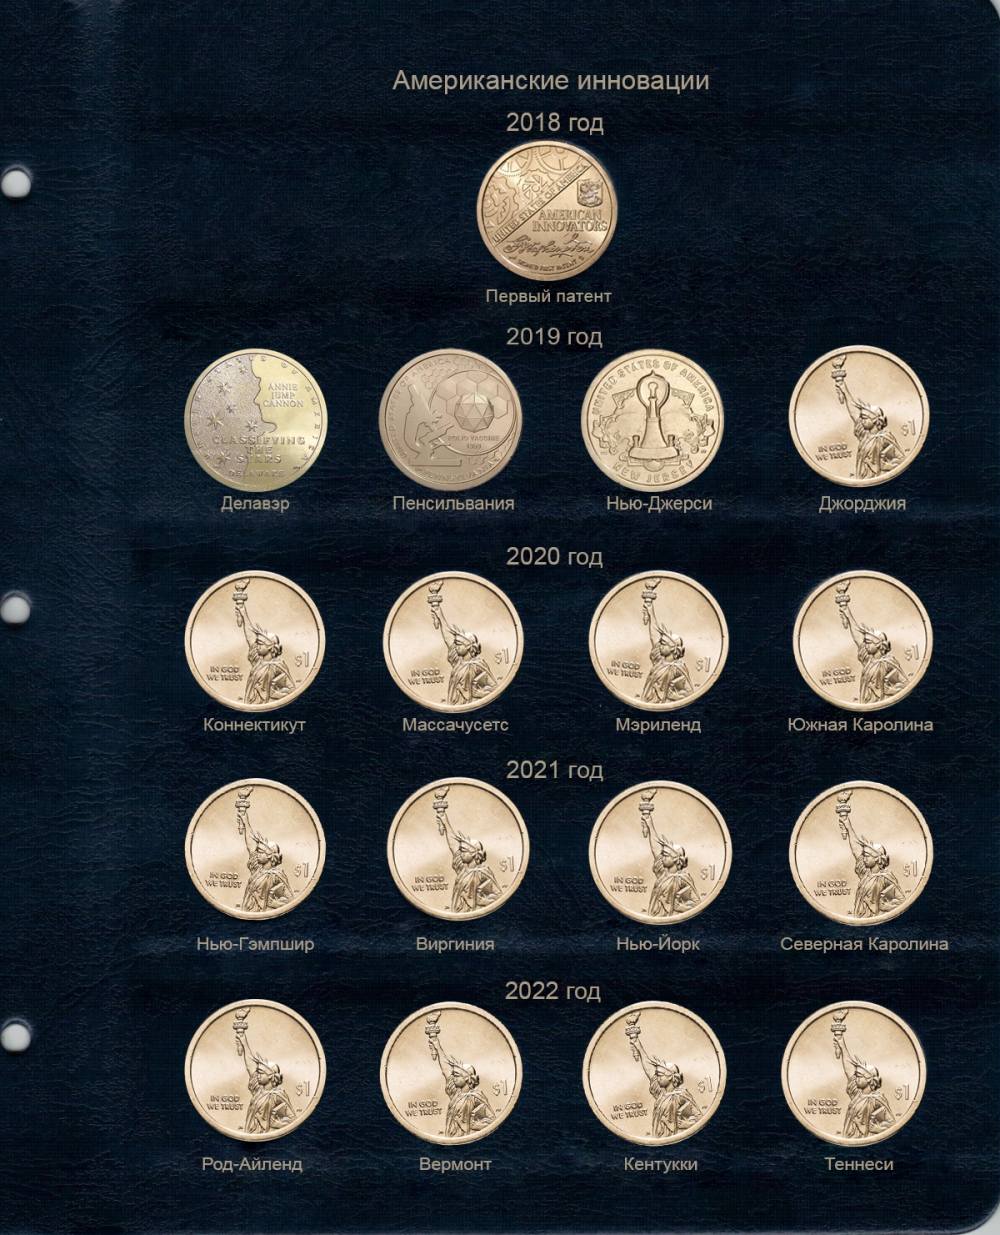 Комплект листов для памятных монет США 1 доллар серии "Американские инновации" - 822